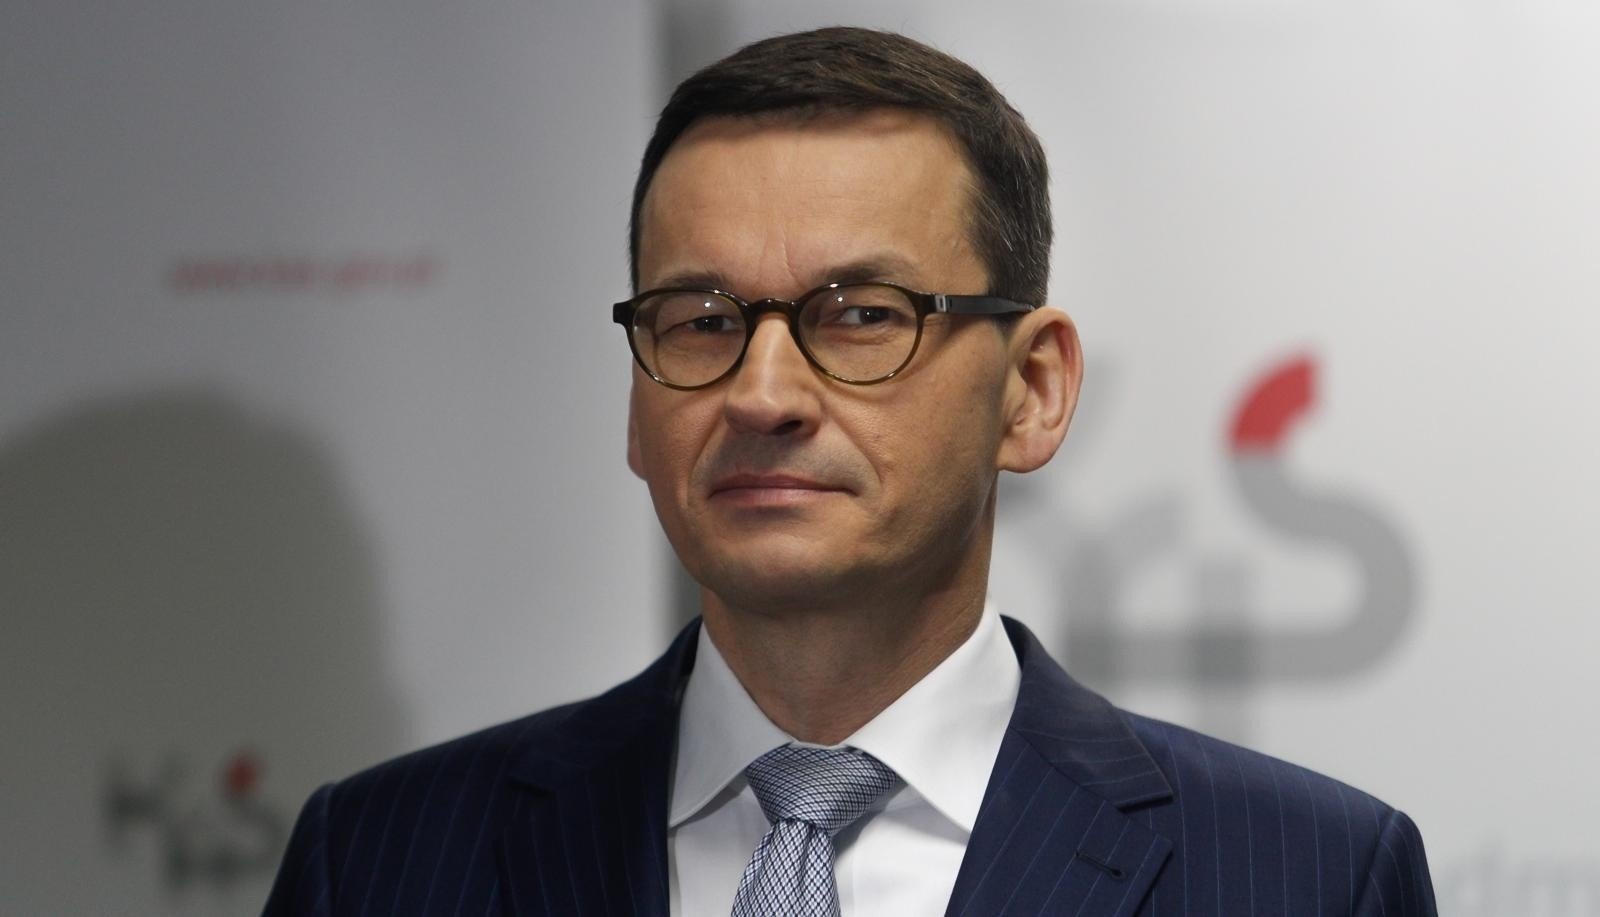 Kim Jest Mateusz Morawiecki Nowy Premier Wybrany Przez Kierownictwo Polityczne Pis Gazeta 5784